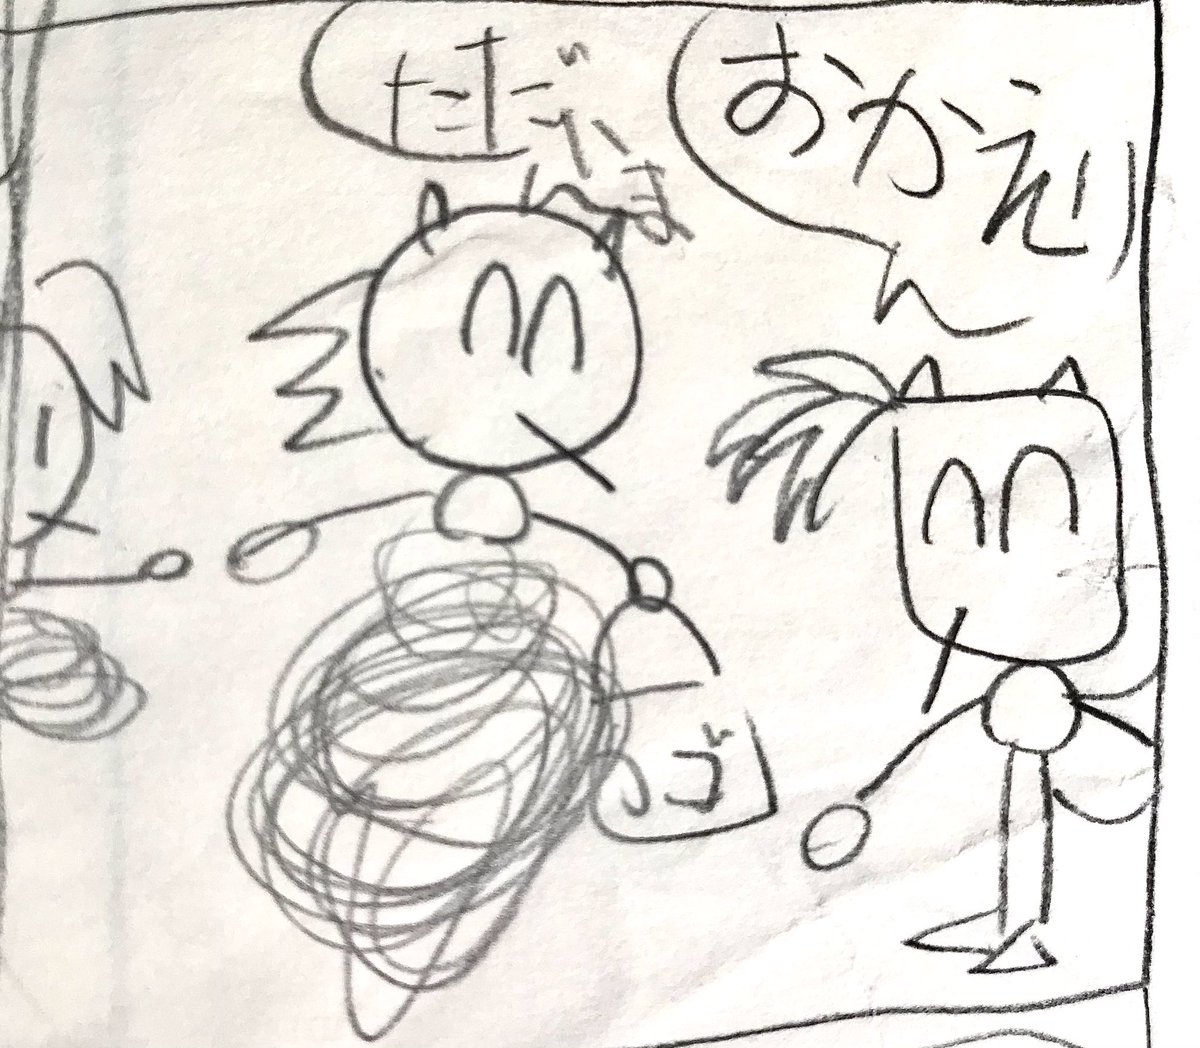 イラスト掲載元(via): https://t.co/sIcVPGF55K

art by Nekomanma a.k.a. NekosouL

🖌My painting life started with drawing Yasuhara's(@Yasuharah) "Tegaki Sonic"!

オイラの絵描き人生は、
安原広和さんが生み出した手書きソニック)を描くところからはじまった…
(-ω-) 